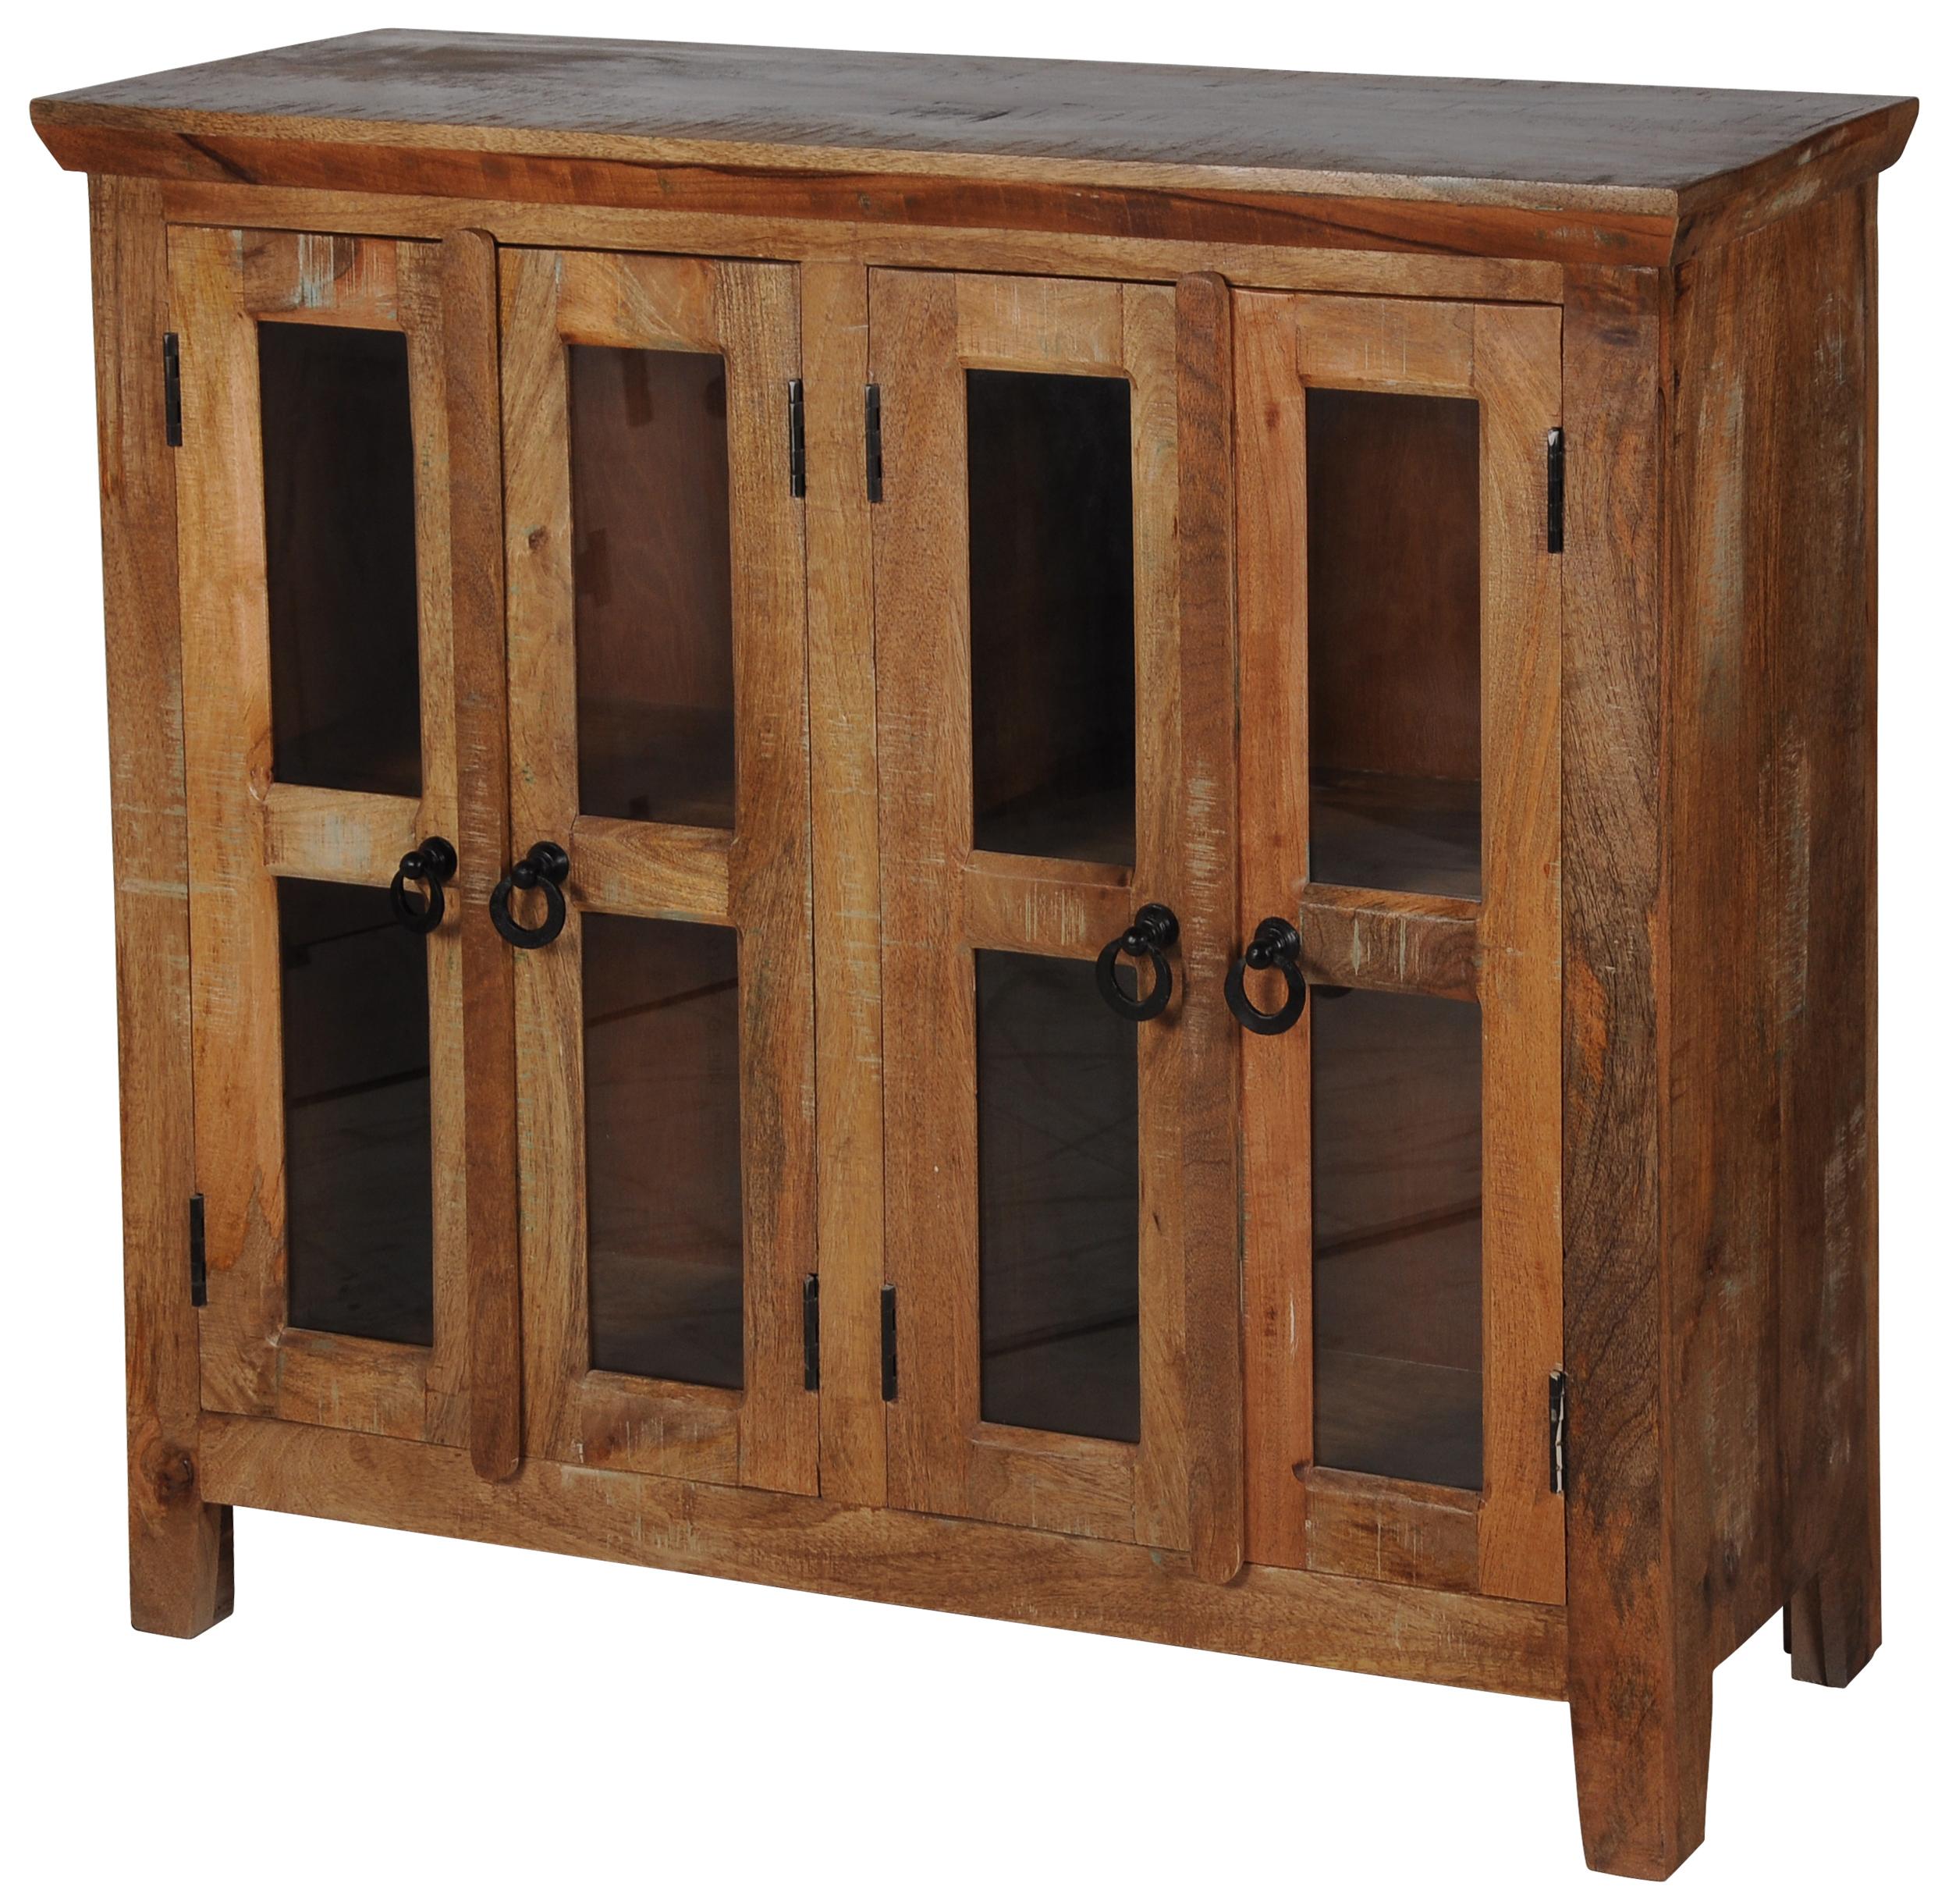 

    
Rustic Reclaimed Brown Solid Wood Bookcase Sideboard JAIPUR HOME GE-5007 Sawan
